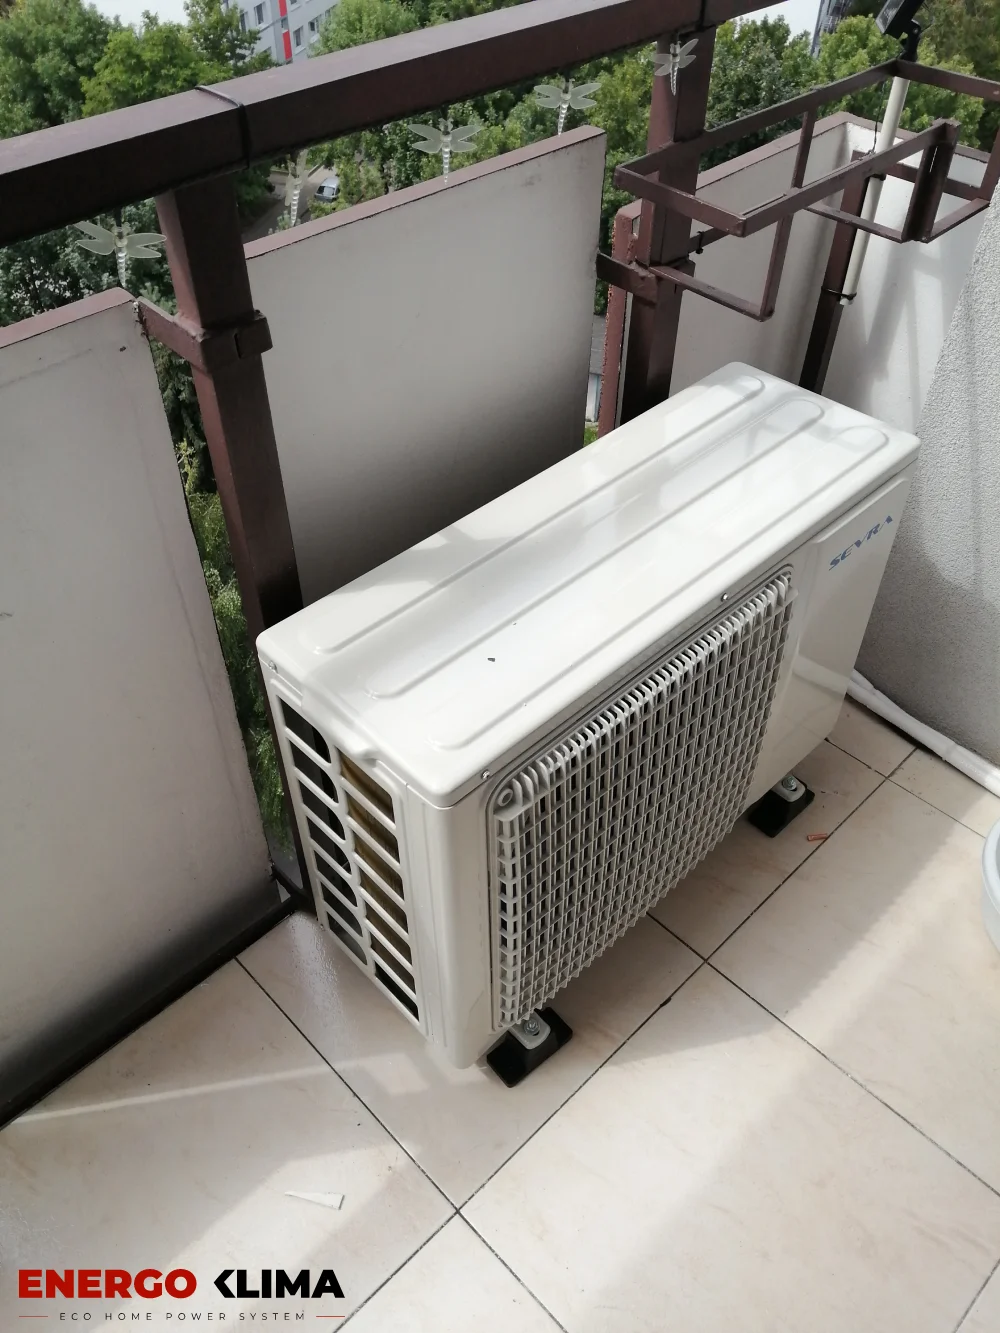 Klimatyzator na balkonie na antywibracyjnych nóżkach